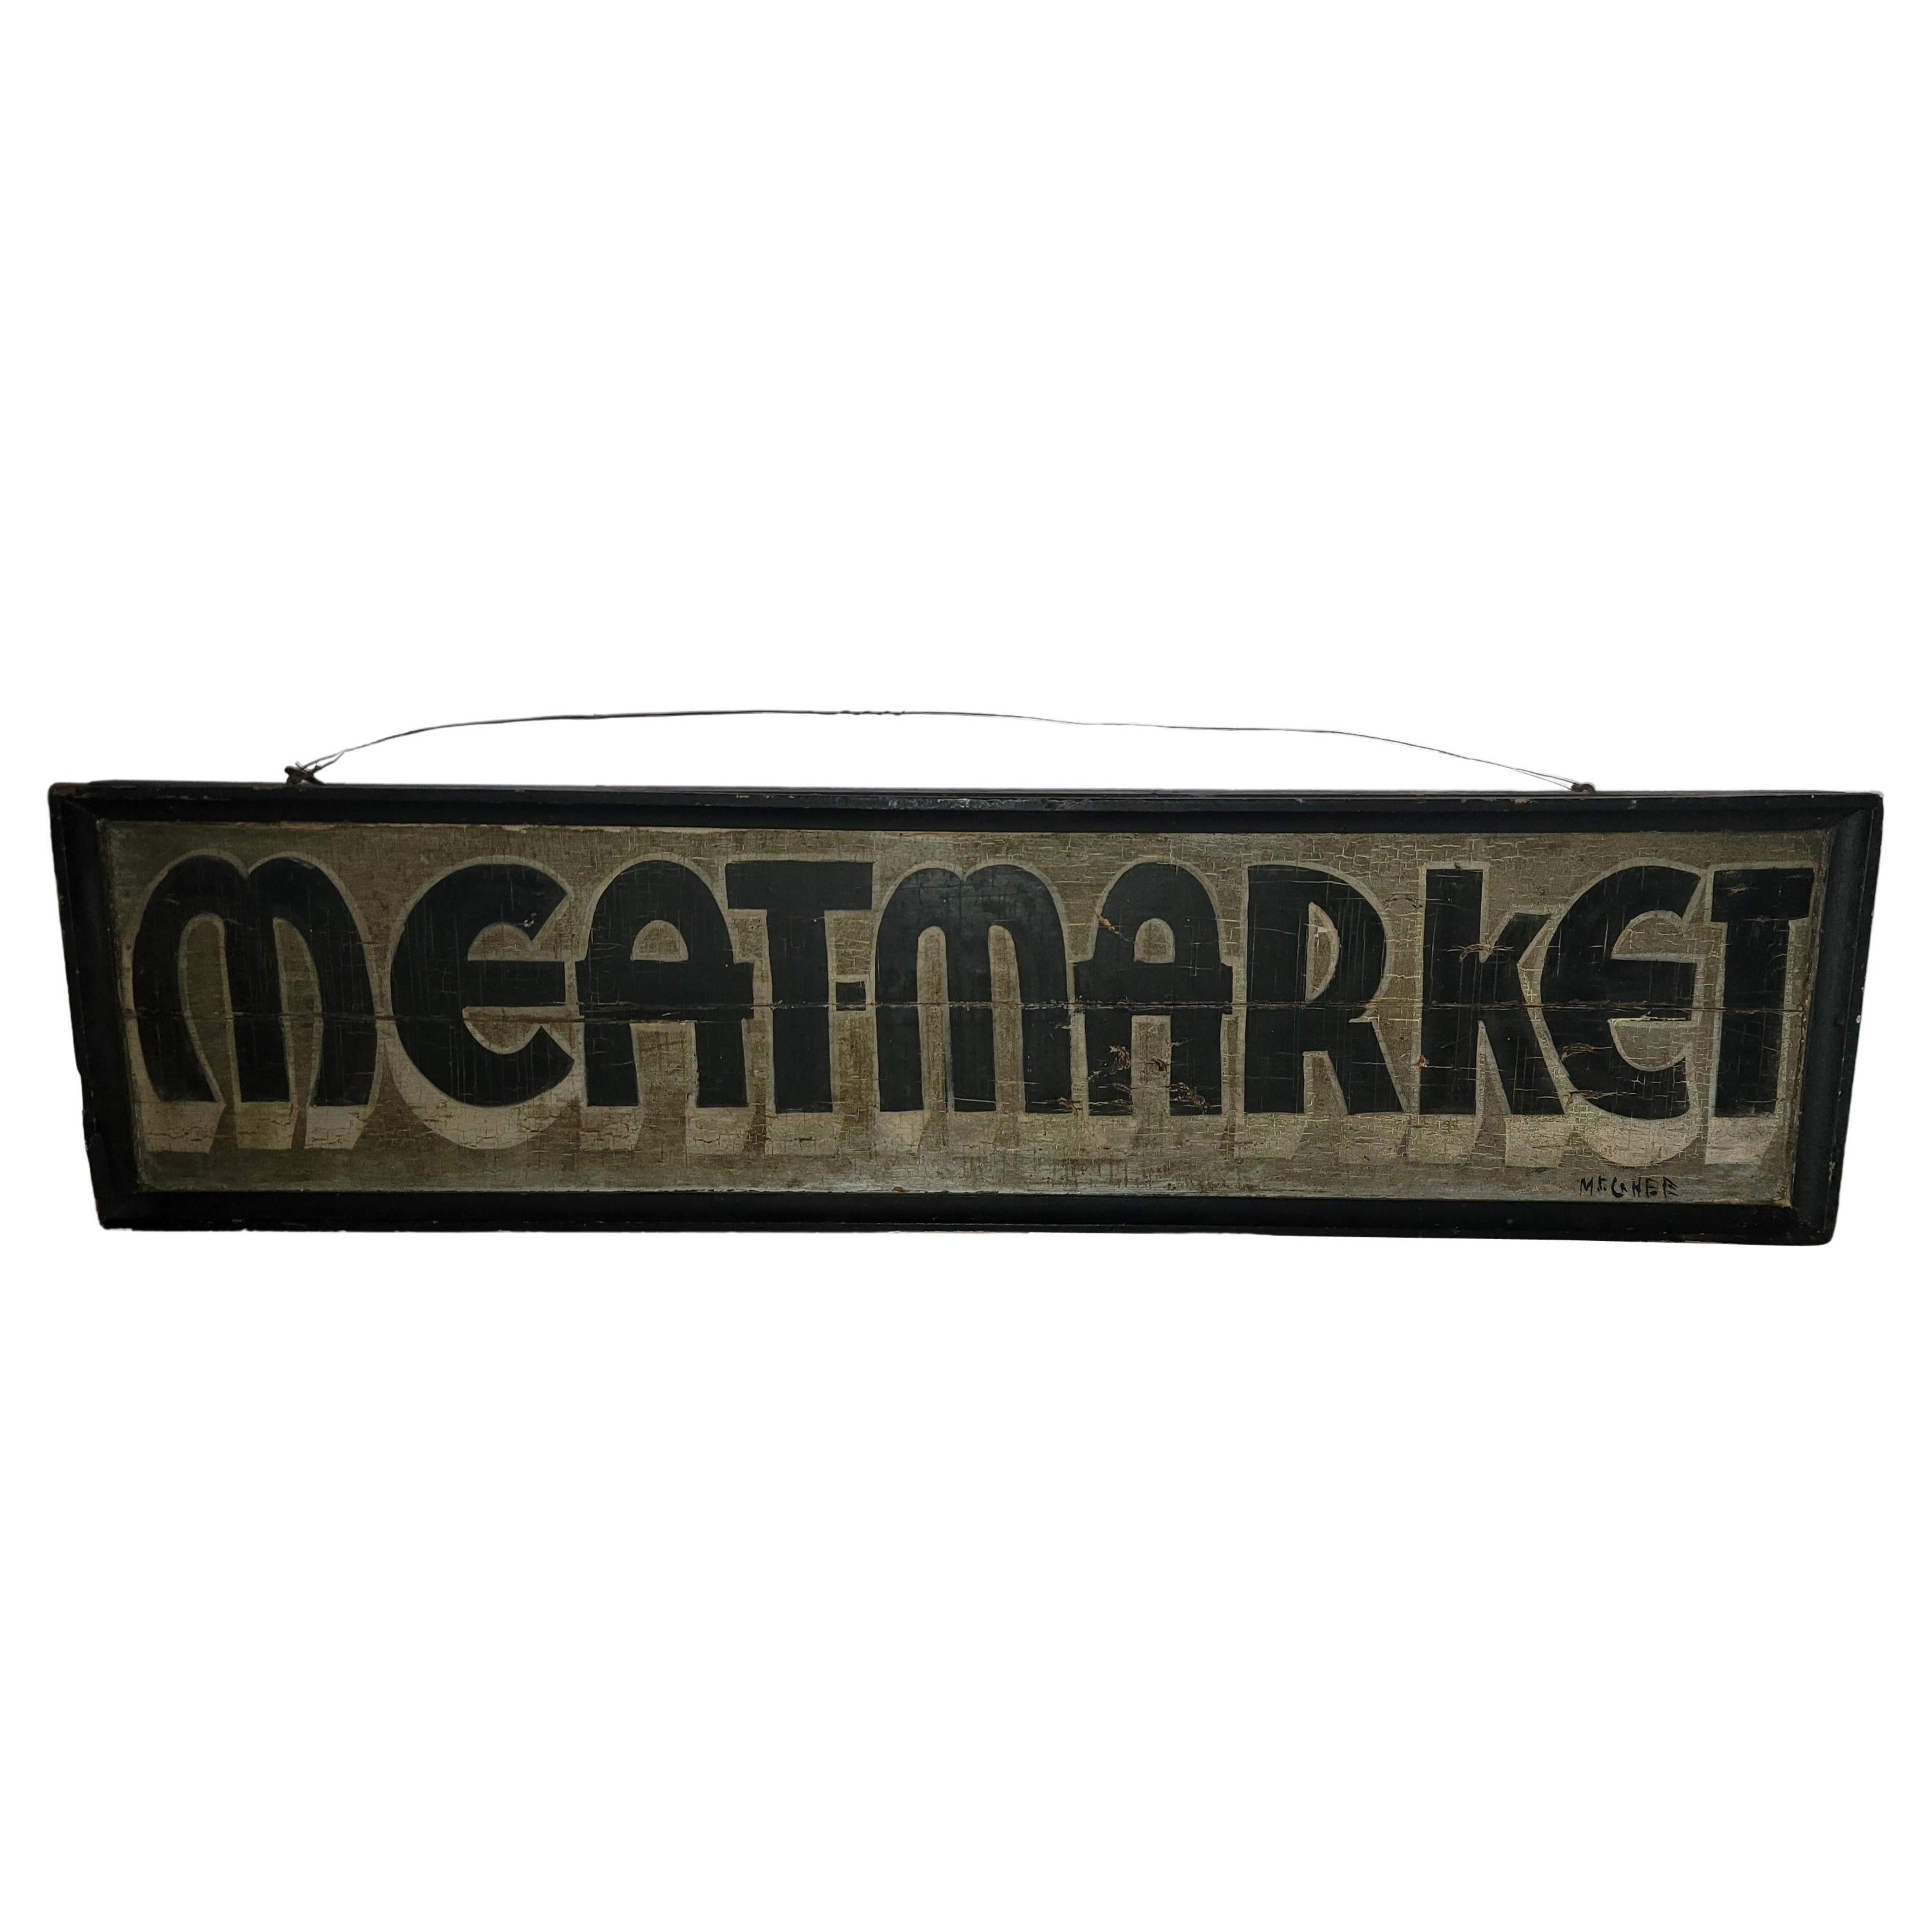 Trade-Schild „Meat Market“ des 20. Jahrhunderts aus Pennsylvania